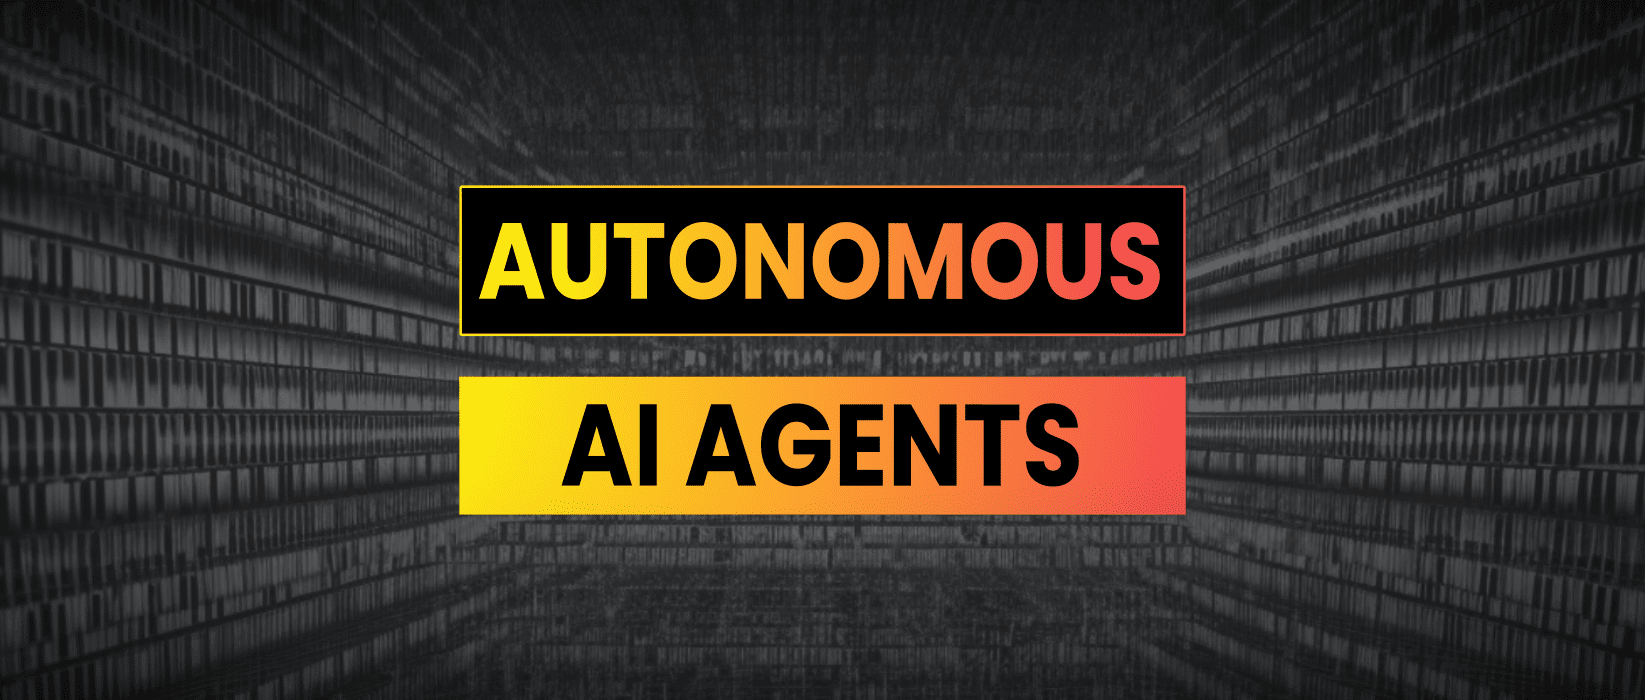 AI Agents